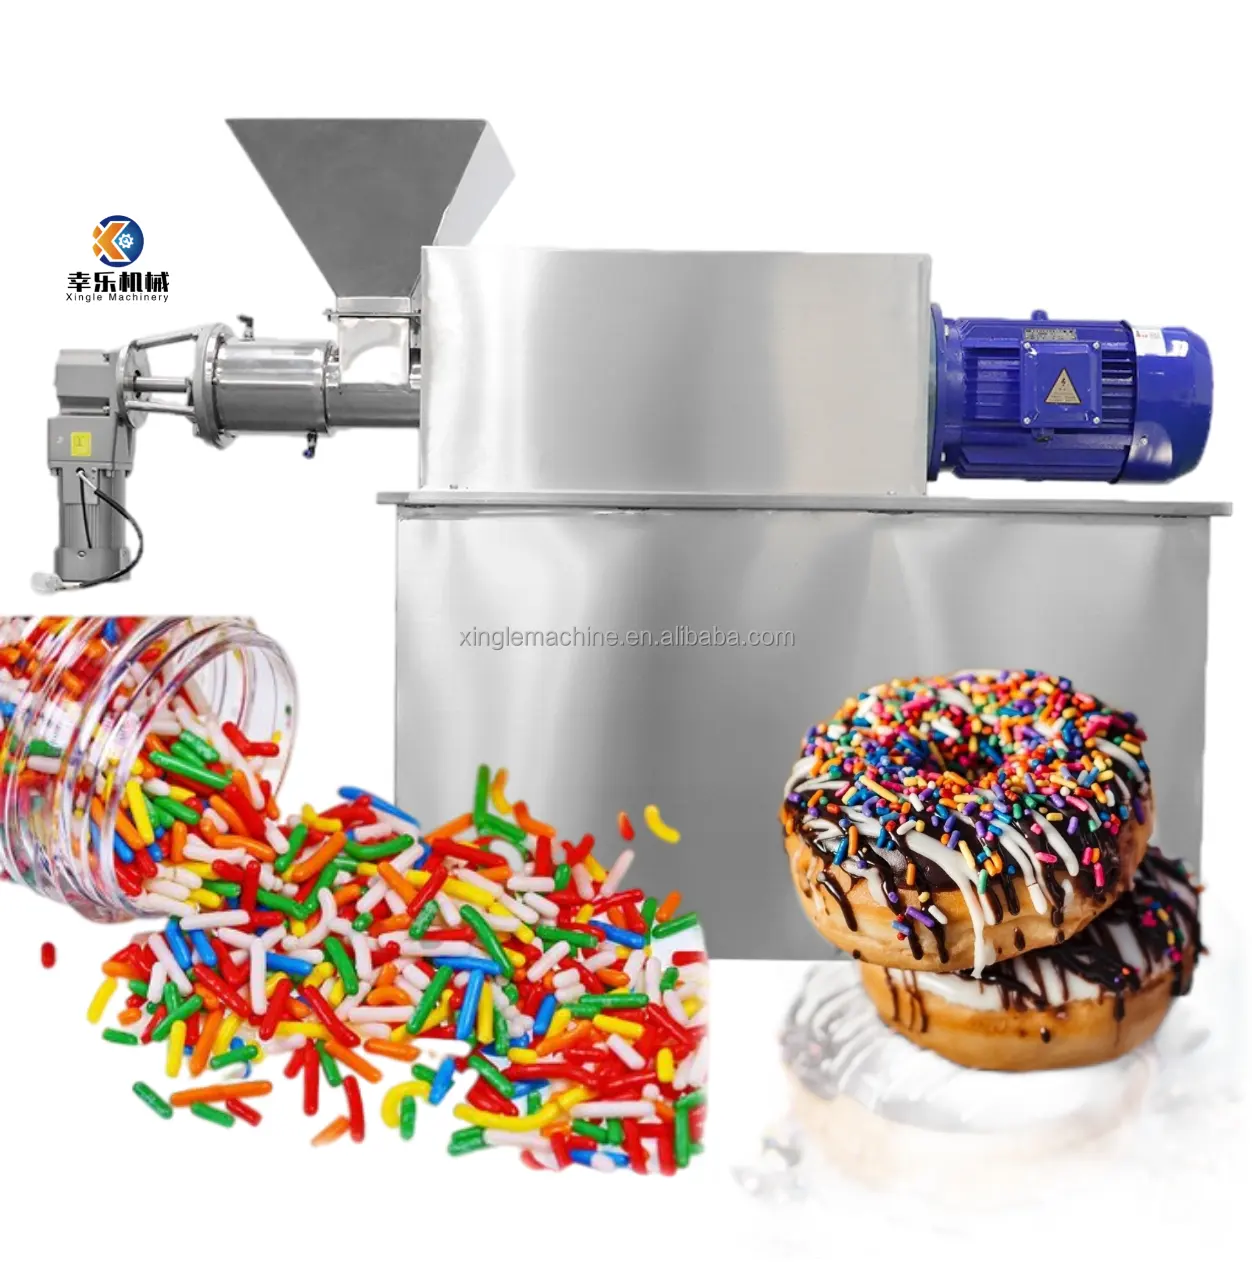 Machine d'extrusion de granulés, ml, de haute qualité, pour faire des gâteaux sans sucre, couleur, confettis, fabrication de granulés